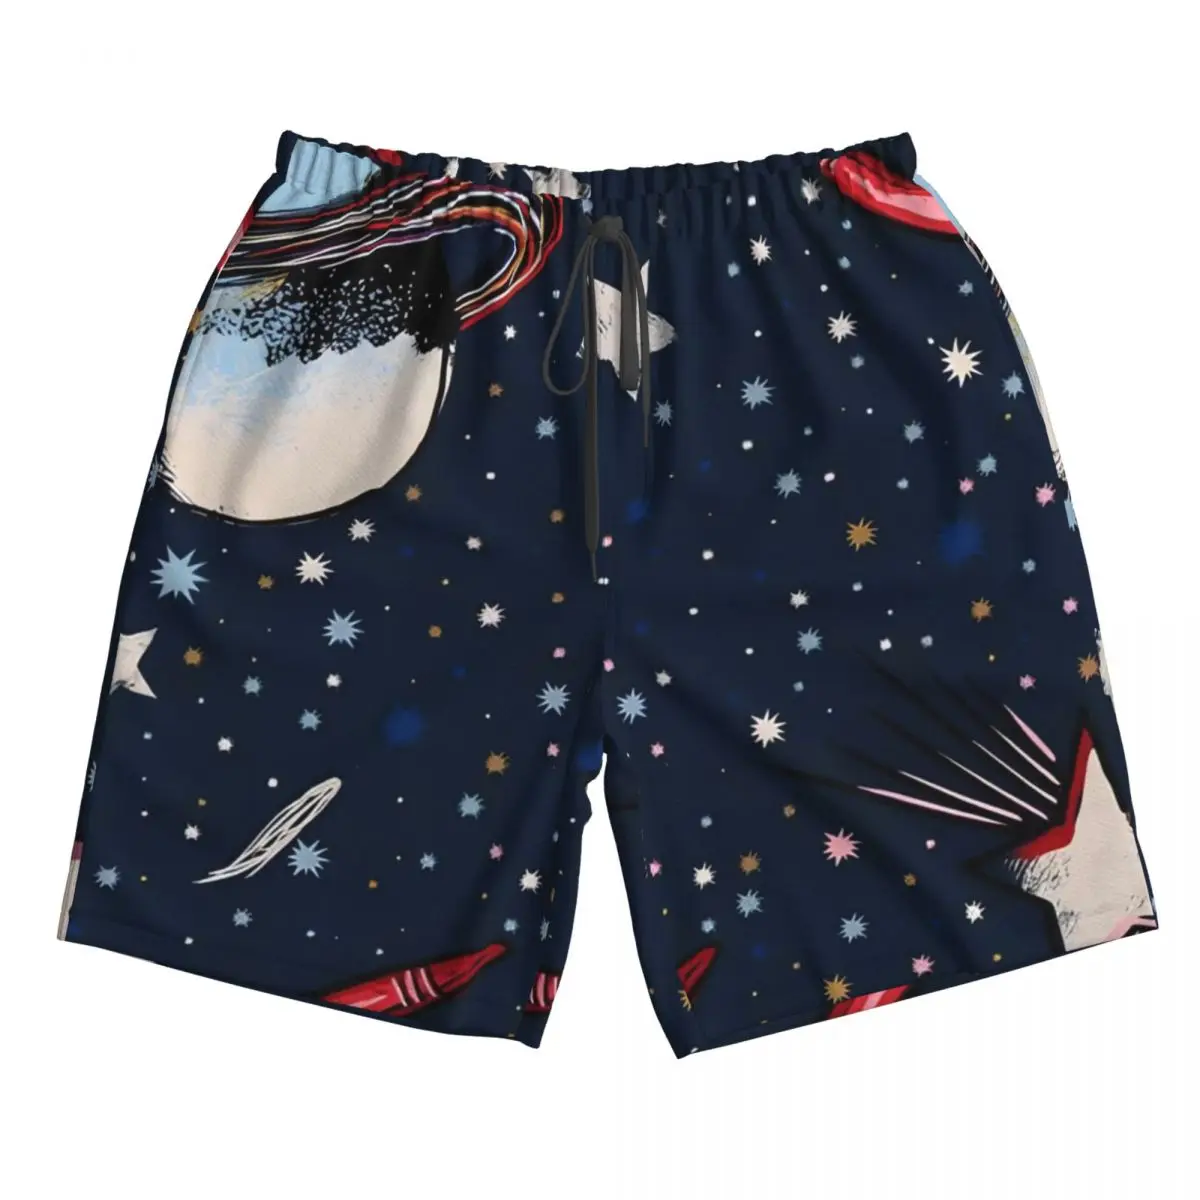 

Мужские пляжные шорты-бермуды, быстрая купальная одежда с космическими звездами и космосом, НЛО, пляжные шорты для отпуска, Прямая поставка